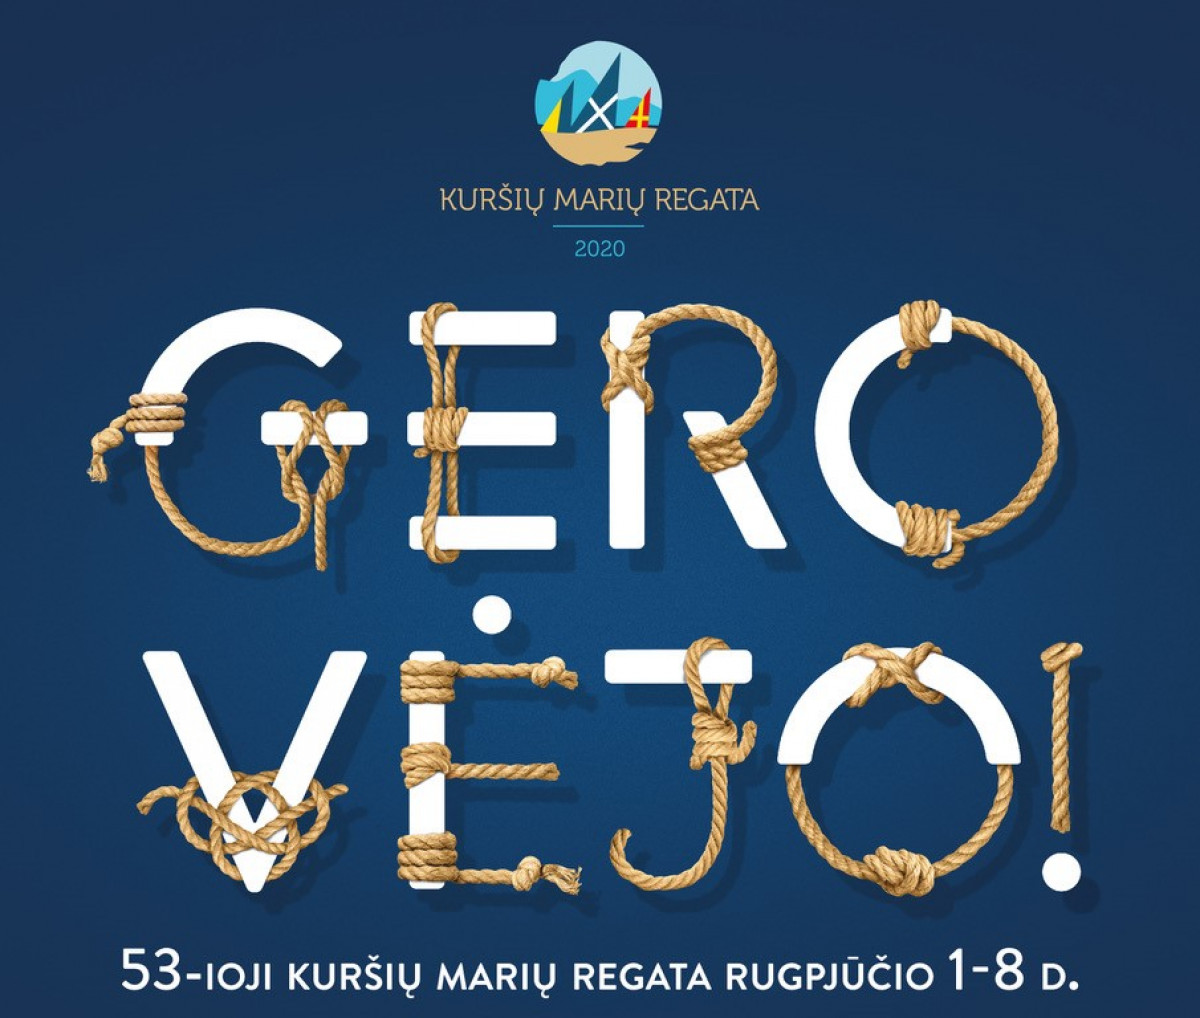 Rugpjūčio 1–8 d.Smiltynėje ir Nidoje vyks Kuršių marių regata 2020 (PROGRAMA)